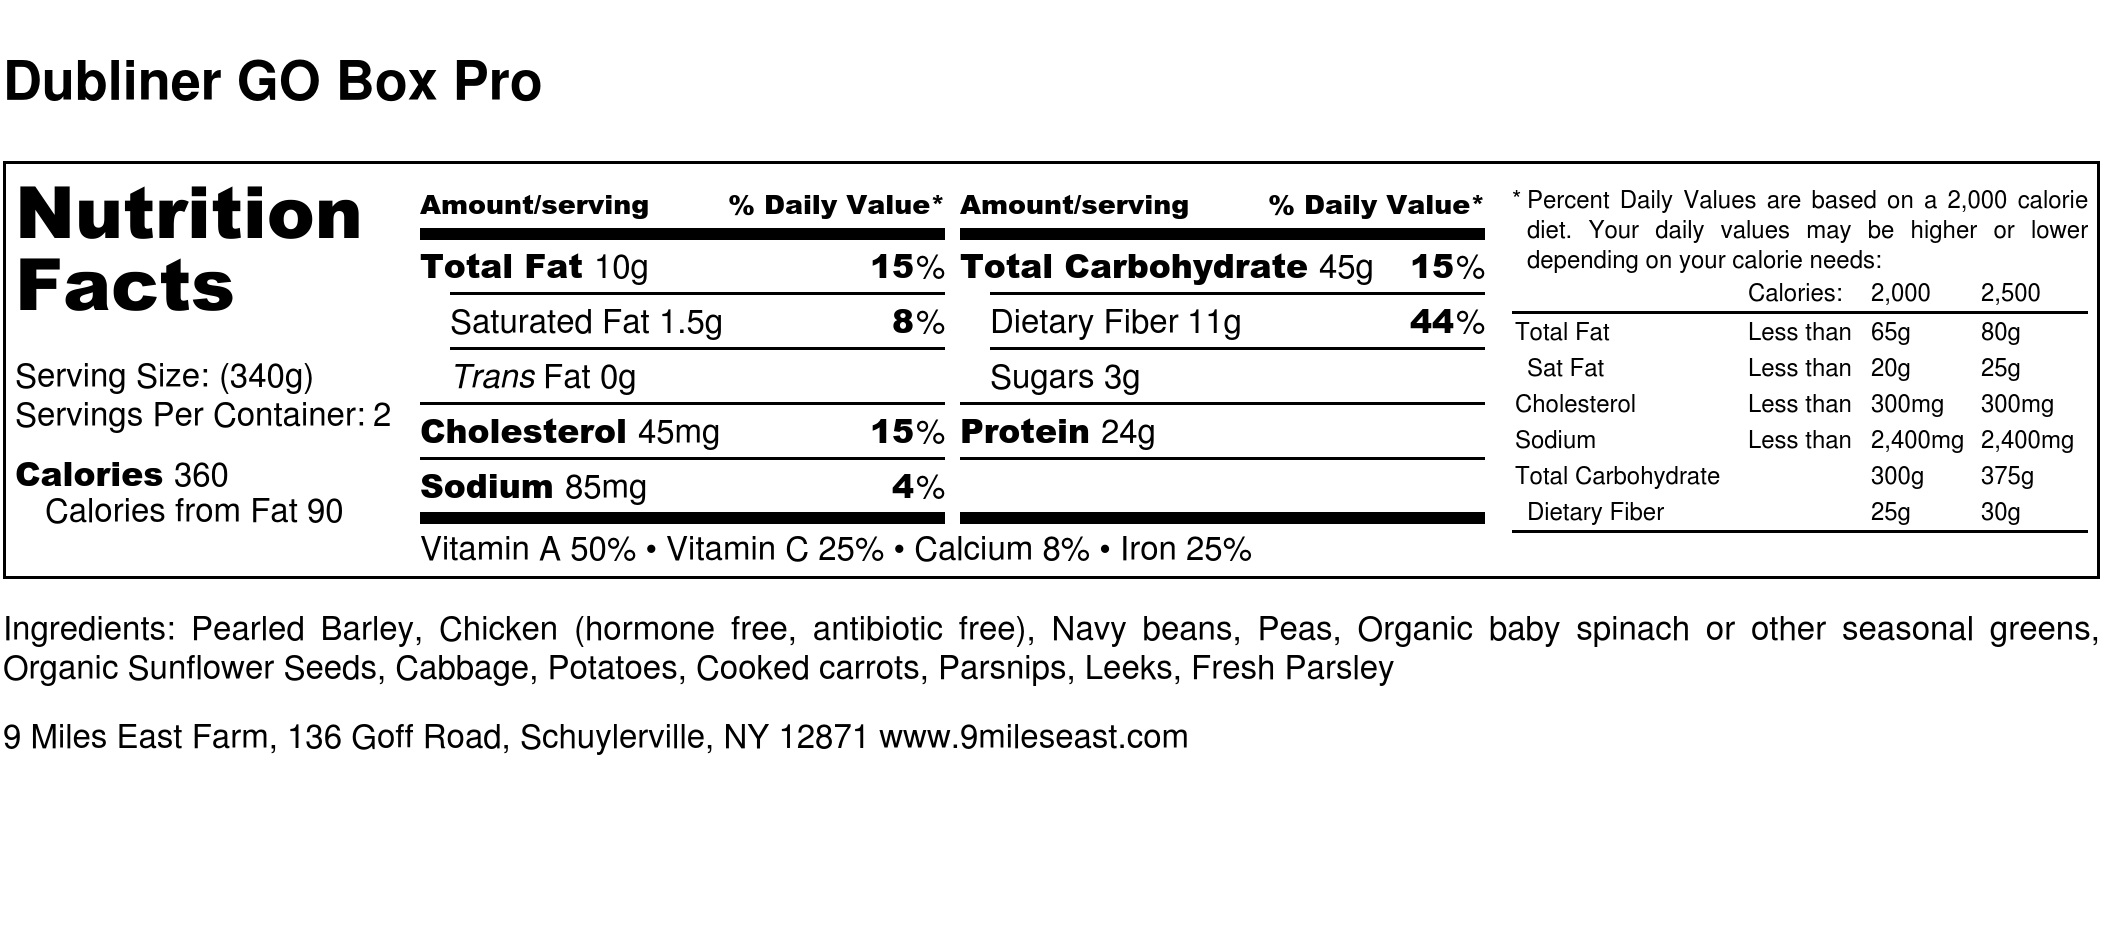 Dubliner GO Box Pro - Nutrition Label.jpg